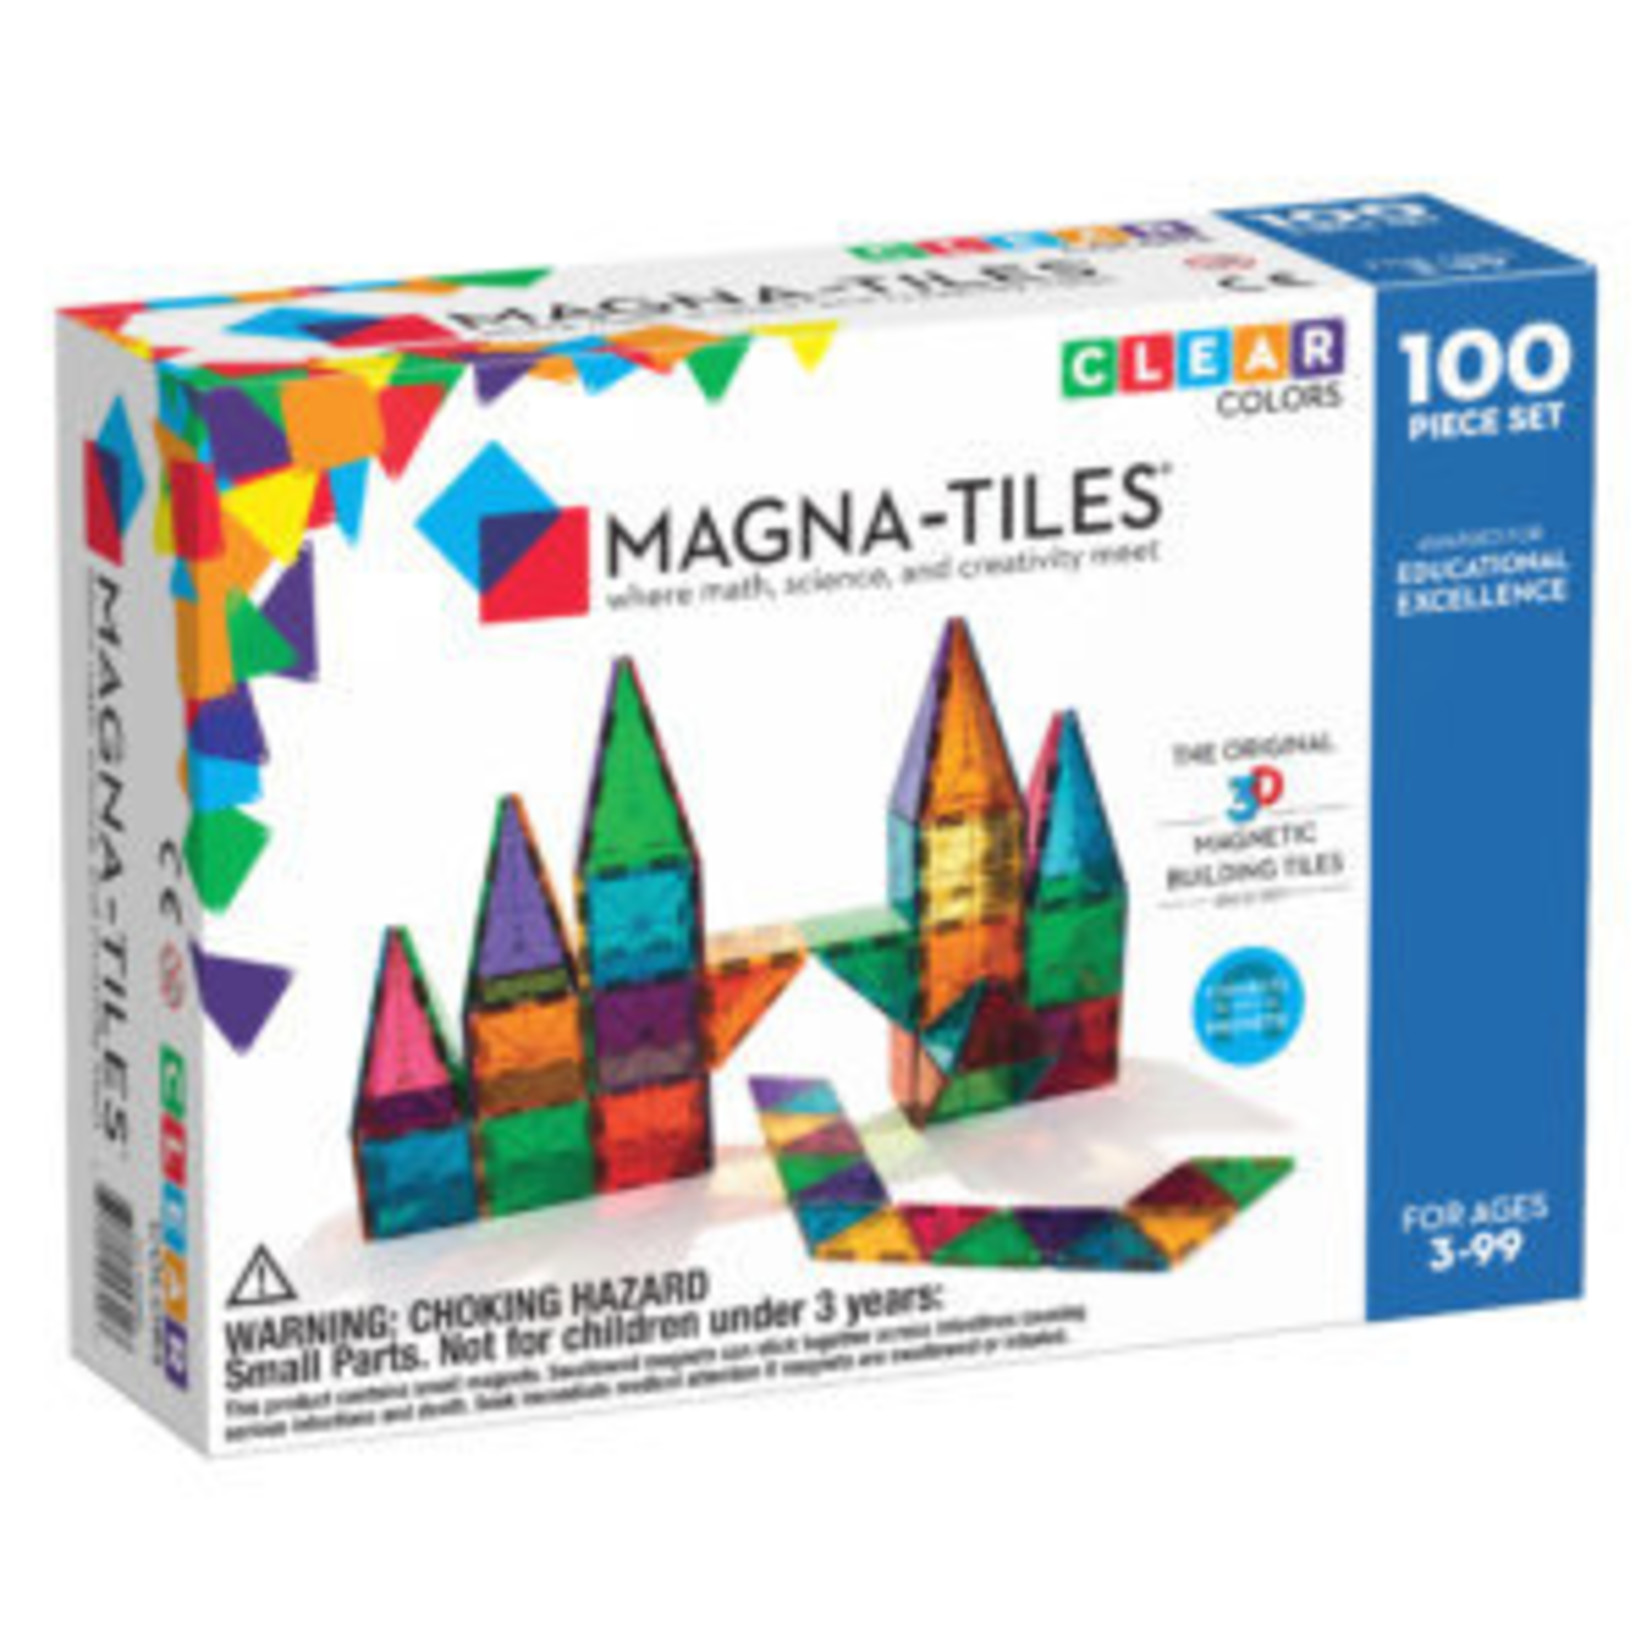 Magna-Tiles Magna-Tiles: Clear Colors, 100 Pieces